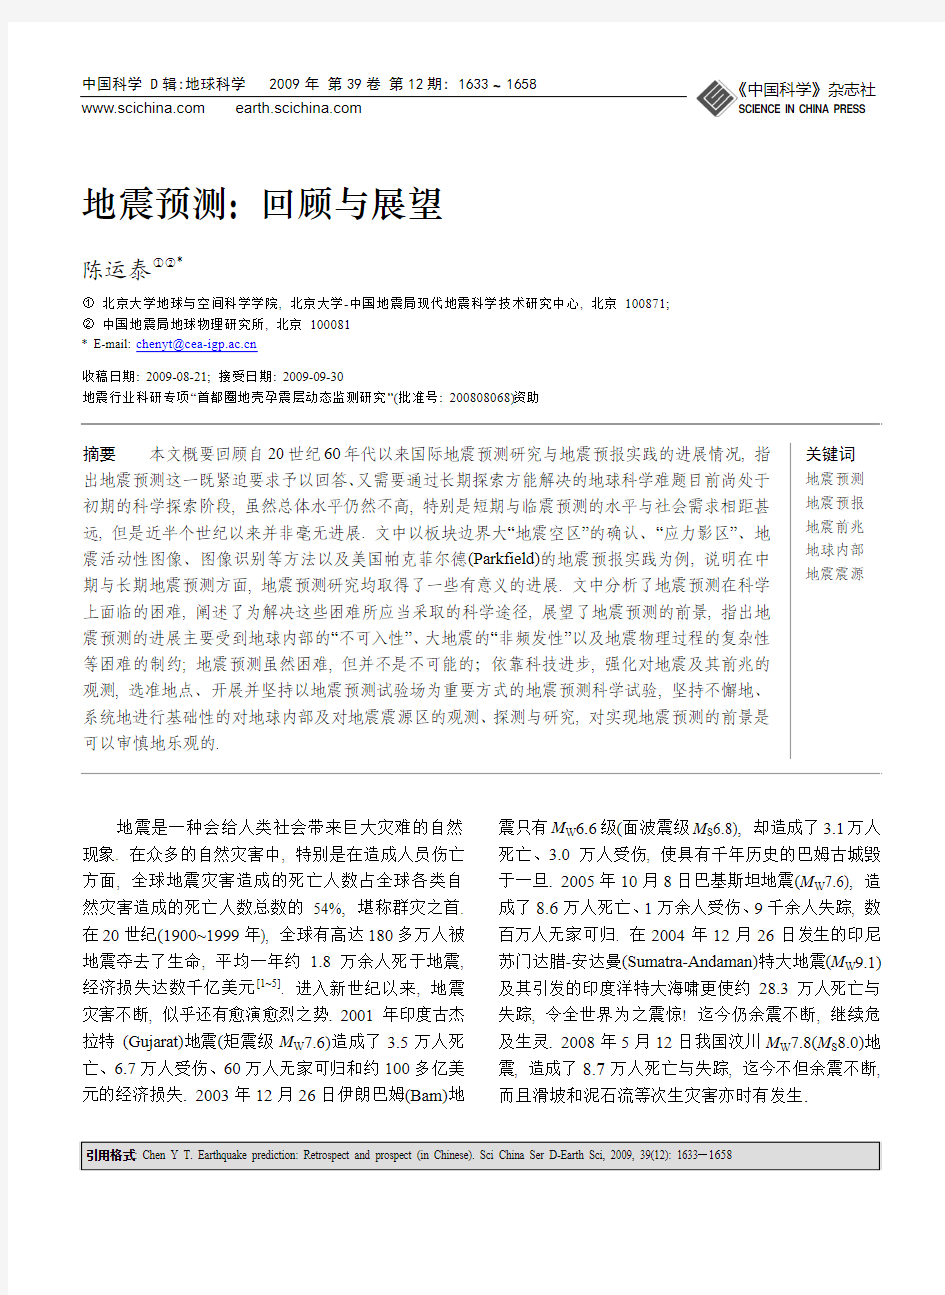 地震预测：回顾与展望(刊载于中国科学(2009)